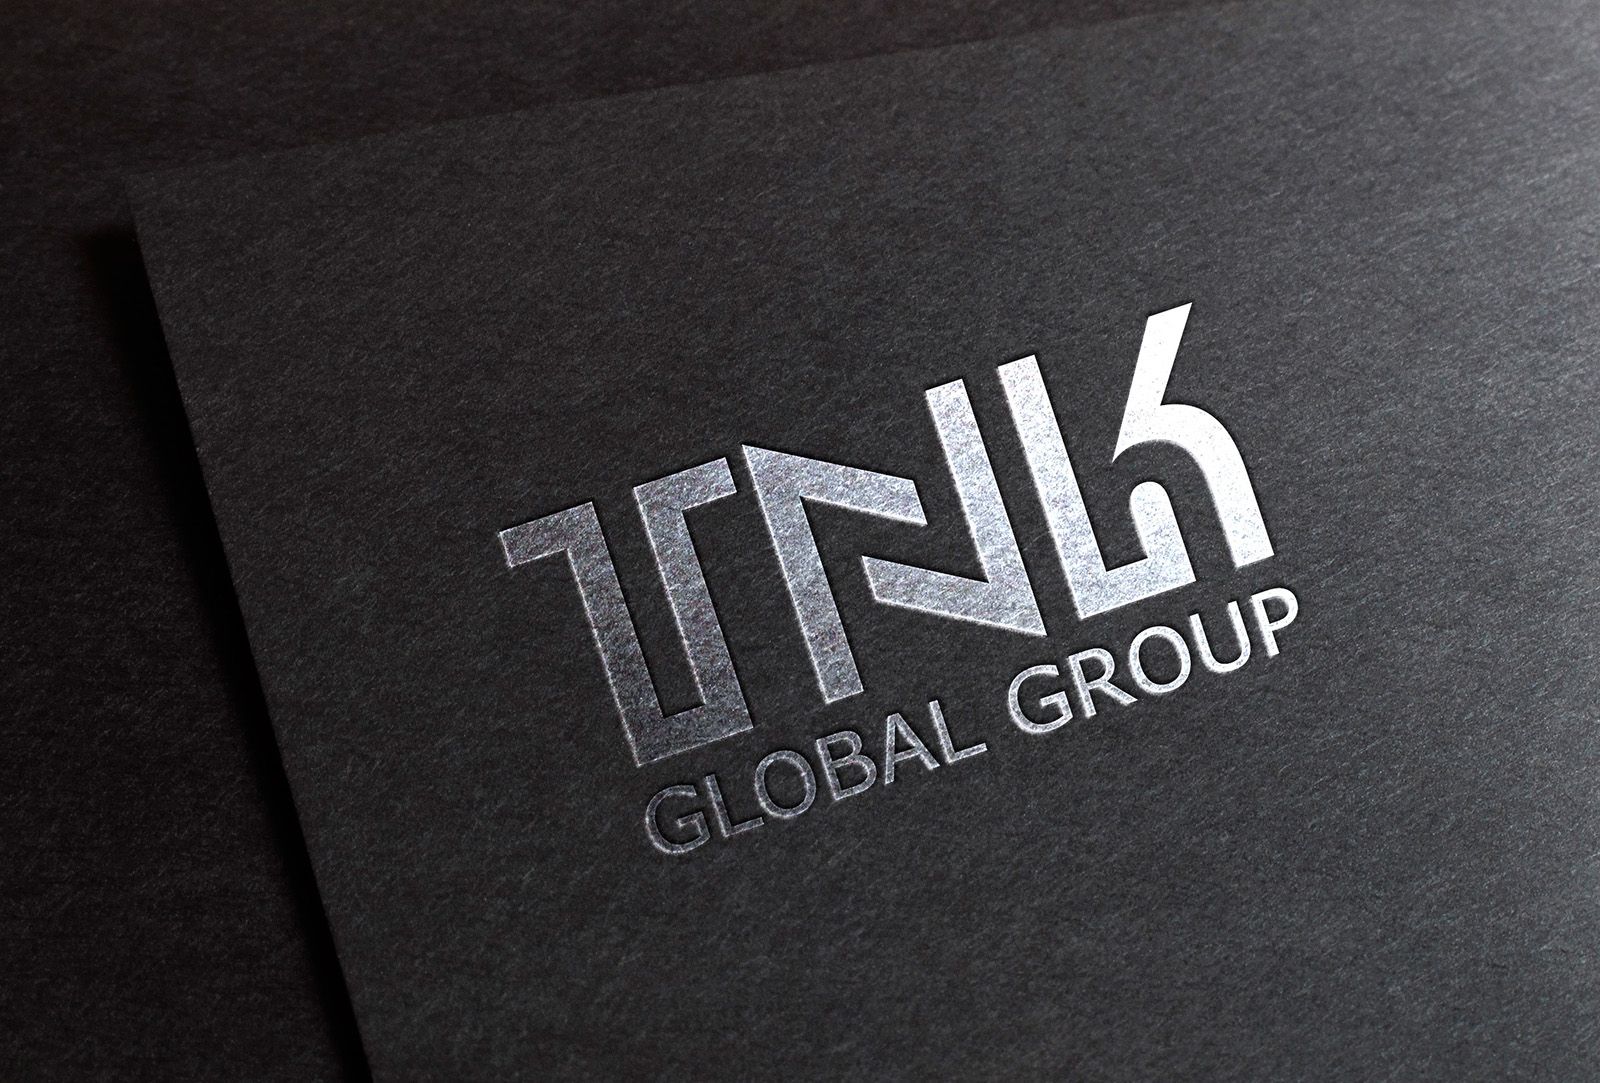 Логотип международной компании - TNK GLOBAL GROUP - дизайнер rabser